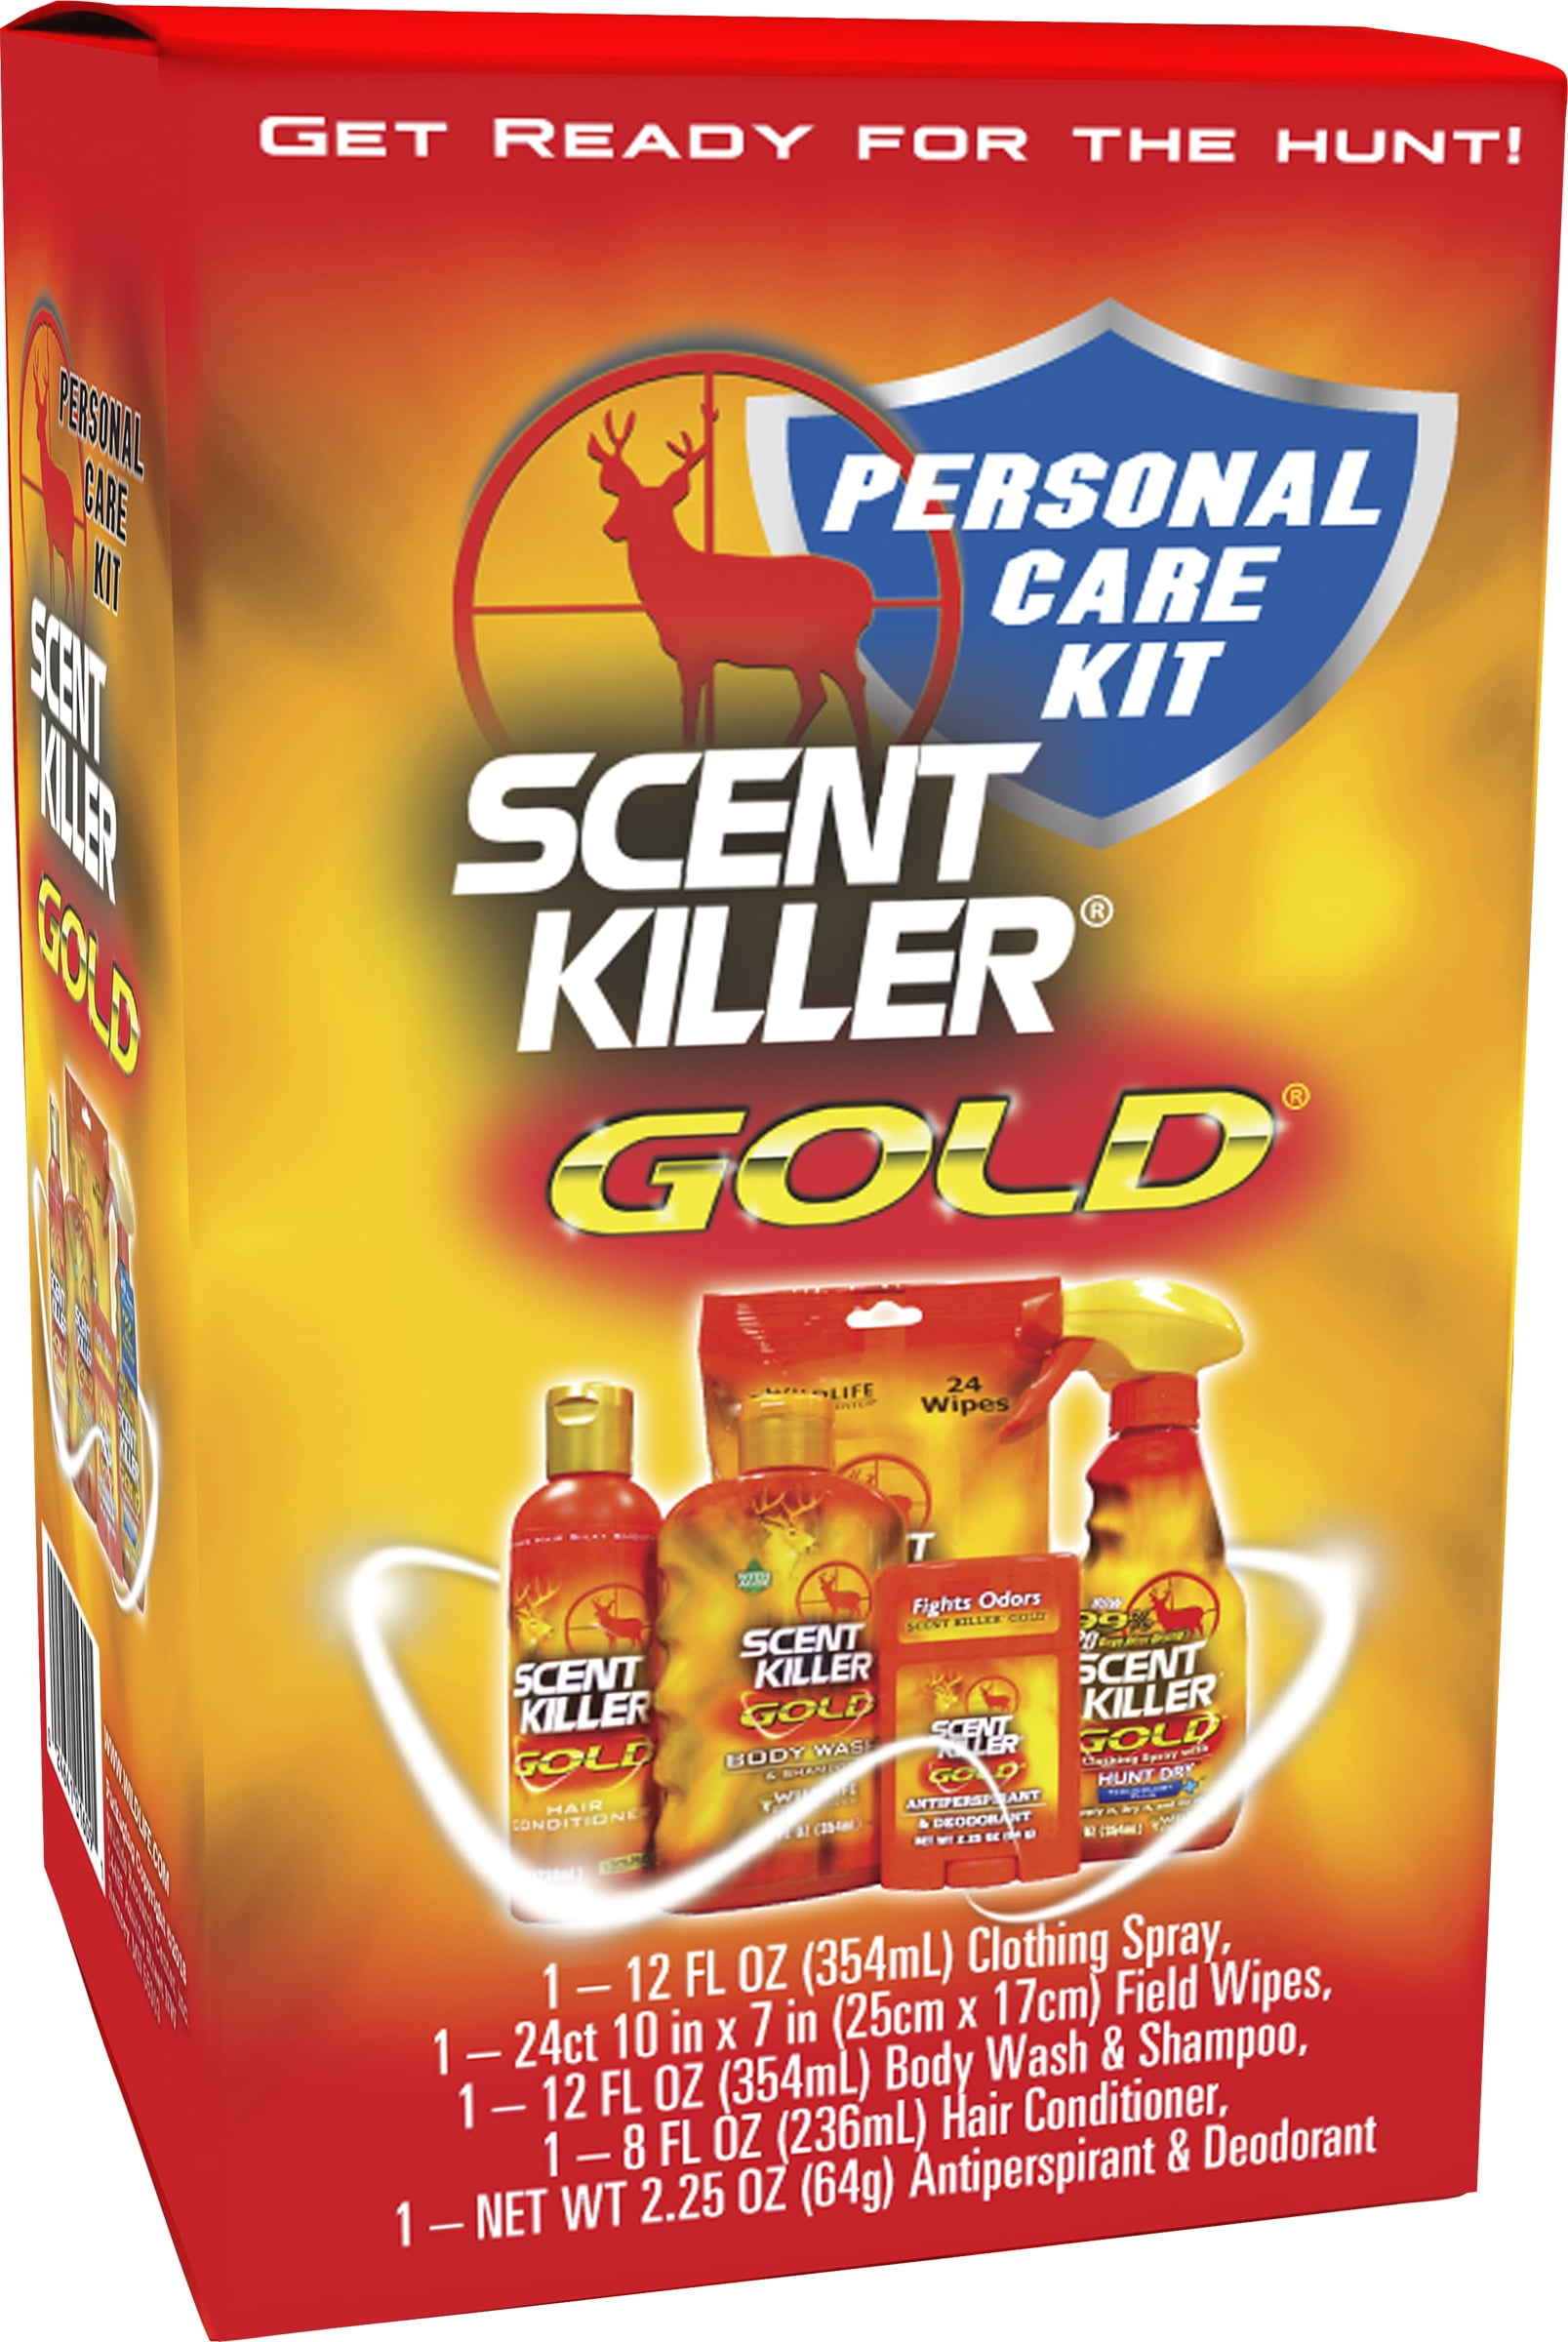 BUNDLE DEAL!! Scent Killer Gold 24 oz plus 1 Extinguisher Deer Call NEW!!! 